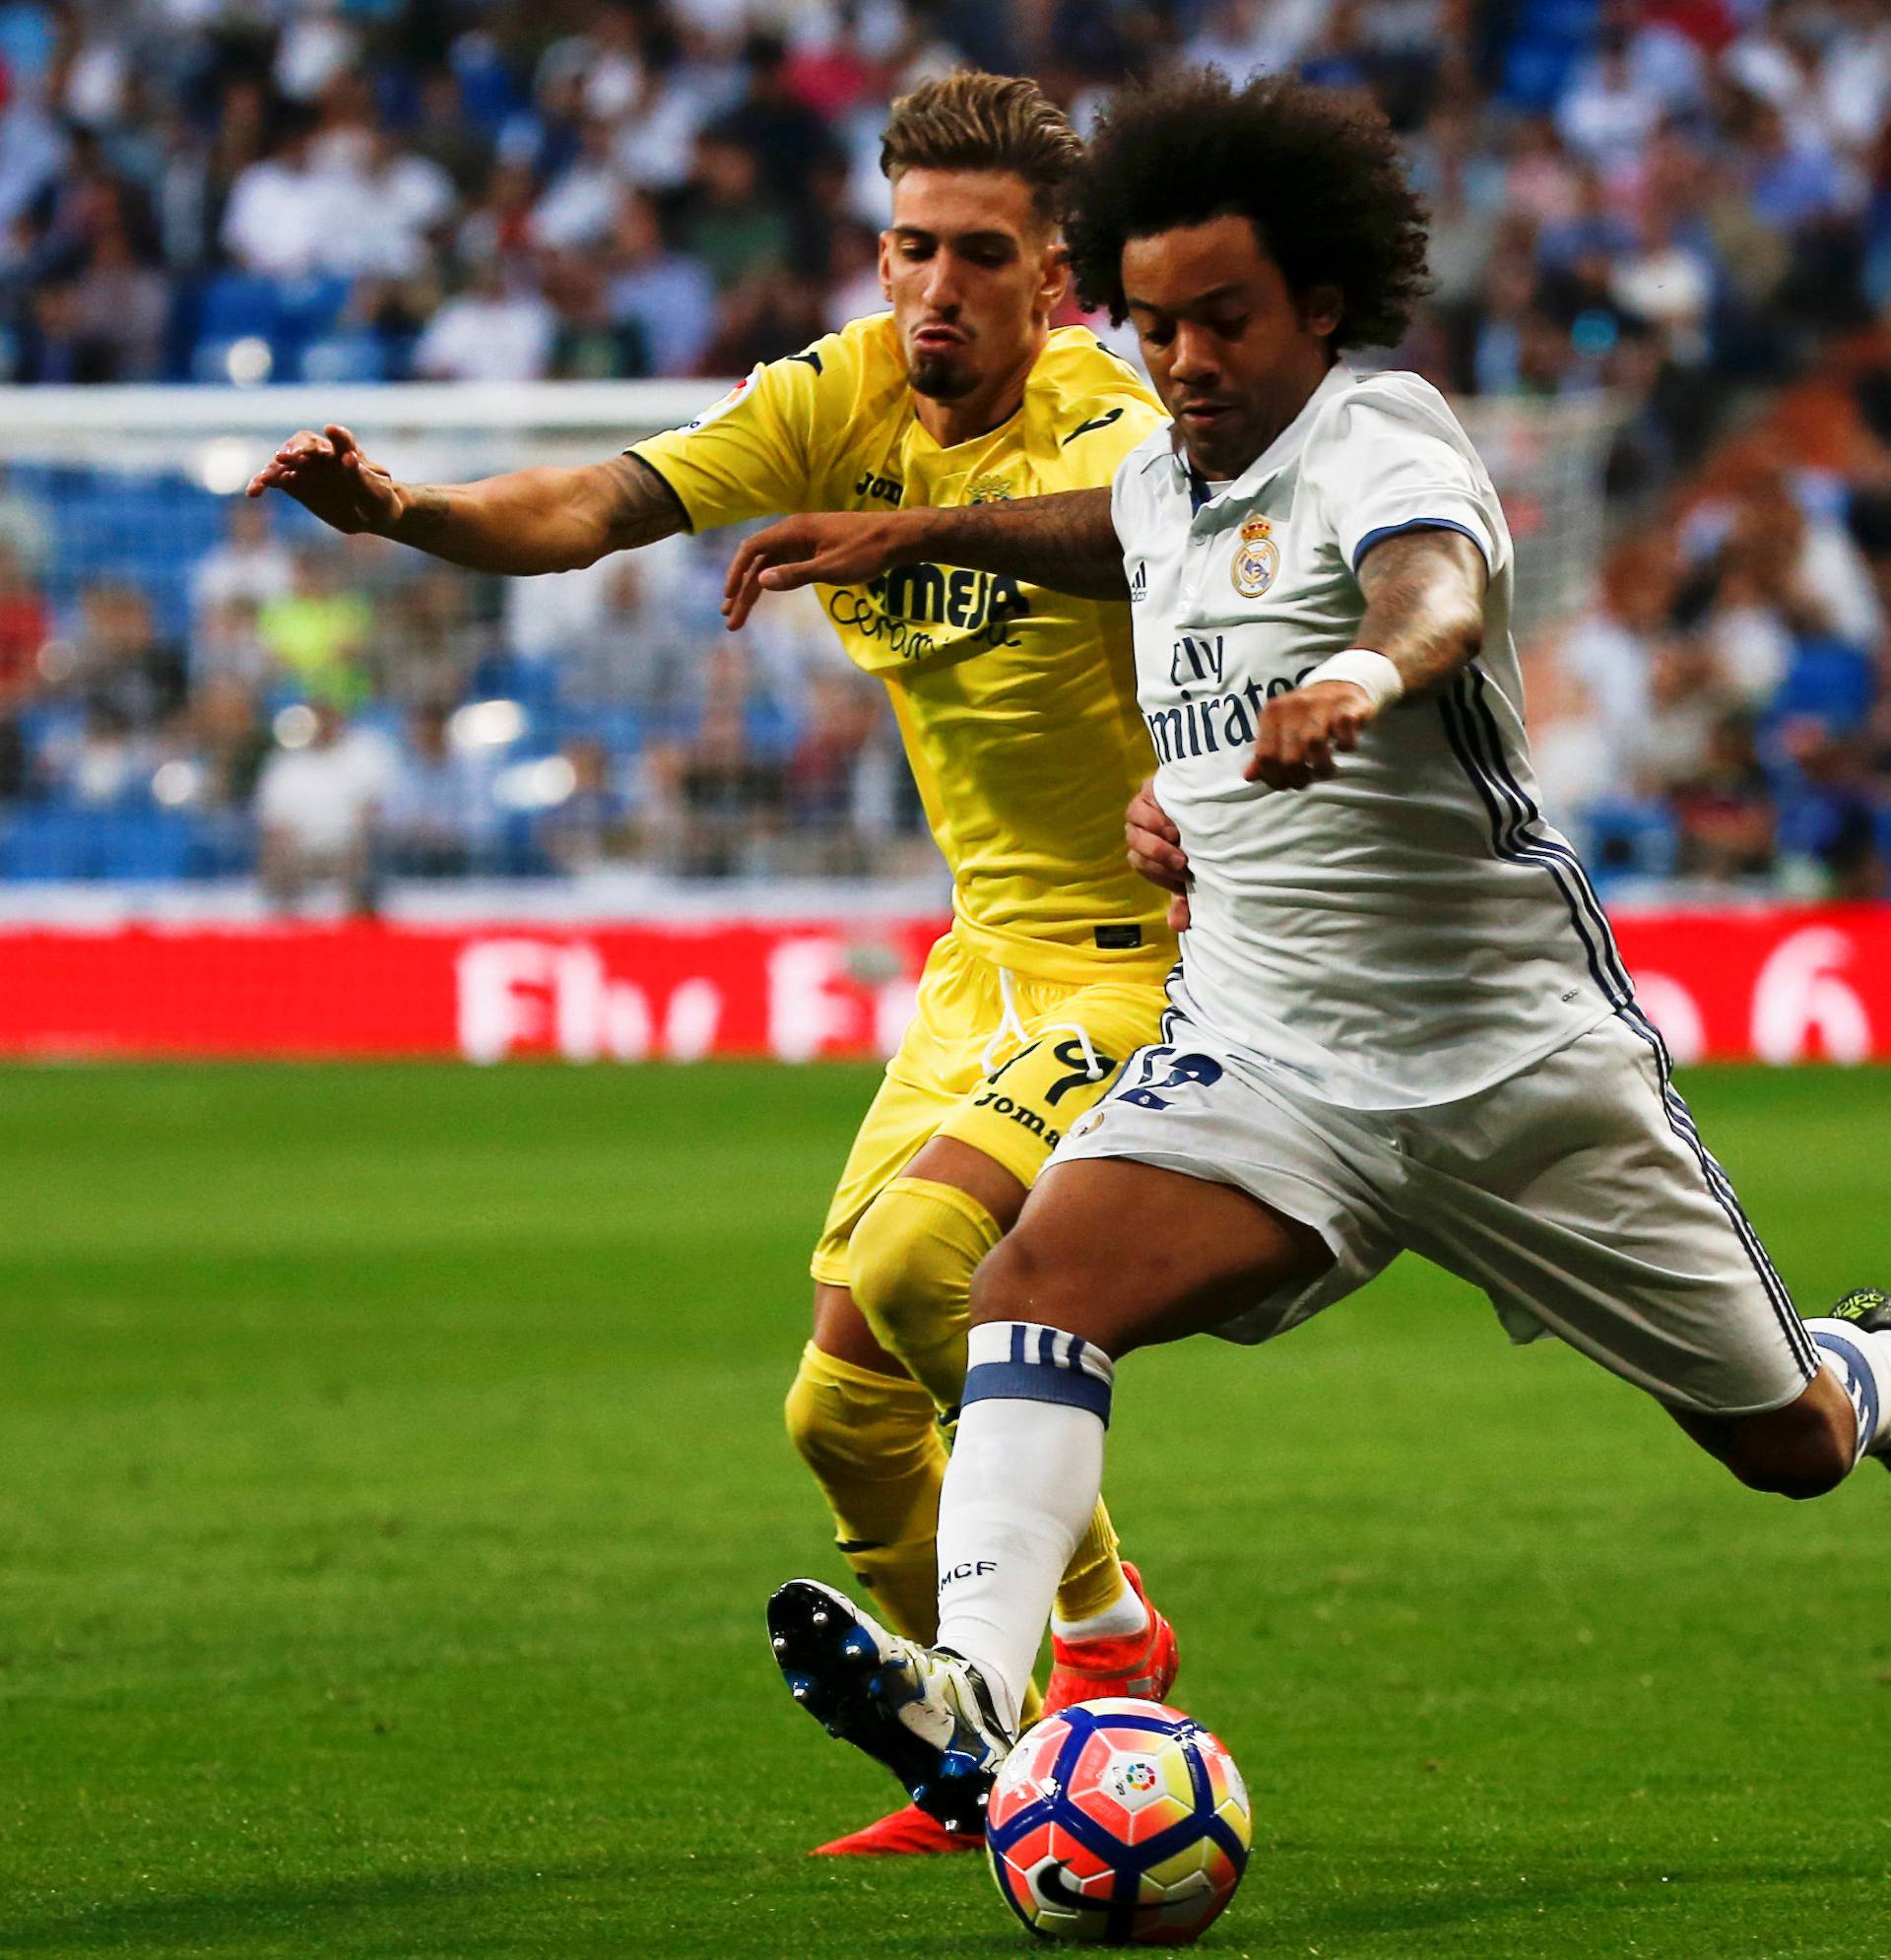 Football Soccer - Real Madrid v Villarreal - Spanish Liga Santander